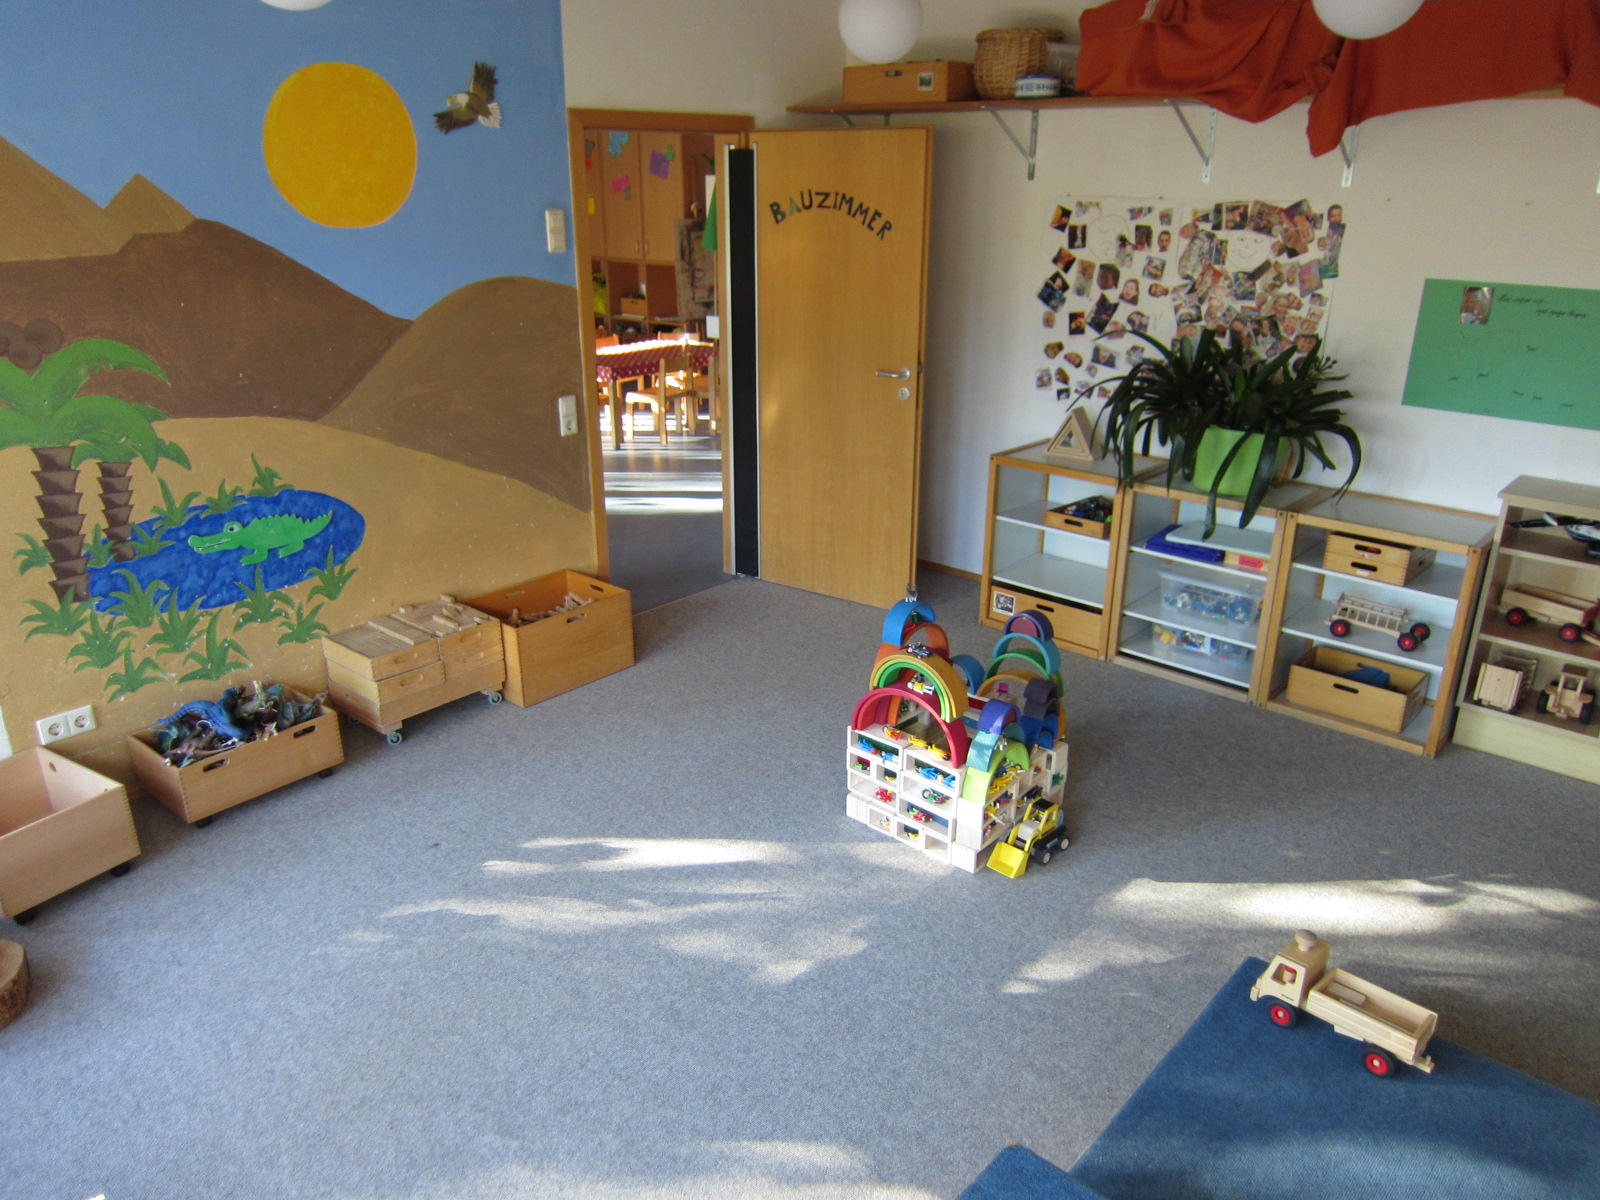 An der rechten Wand steht ein Regal mit Spielsachen, die linke Wand ist mit einer Oasenszene mit Krokodil bemalt. Davor stehen Holzkisten mit Holzklötzen.